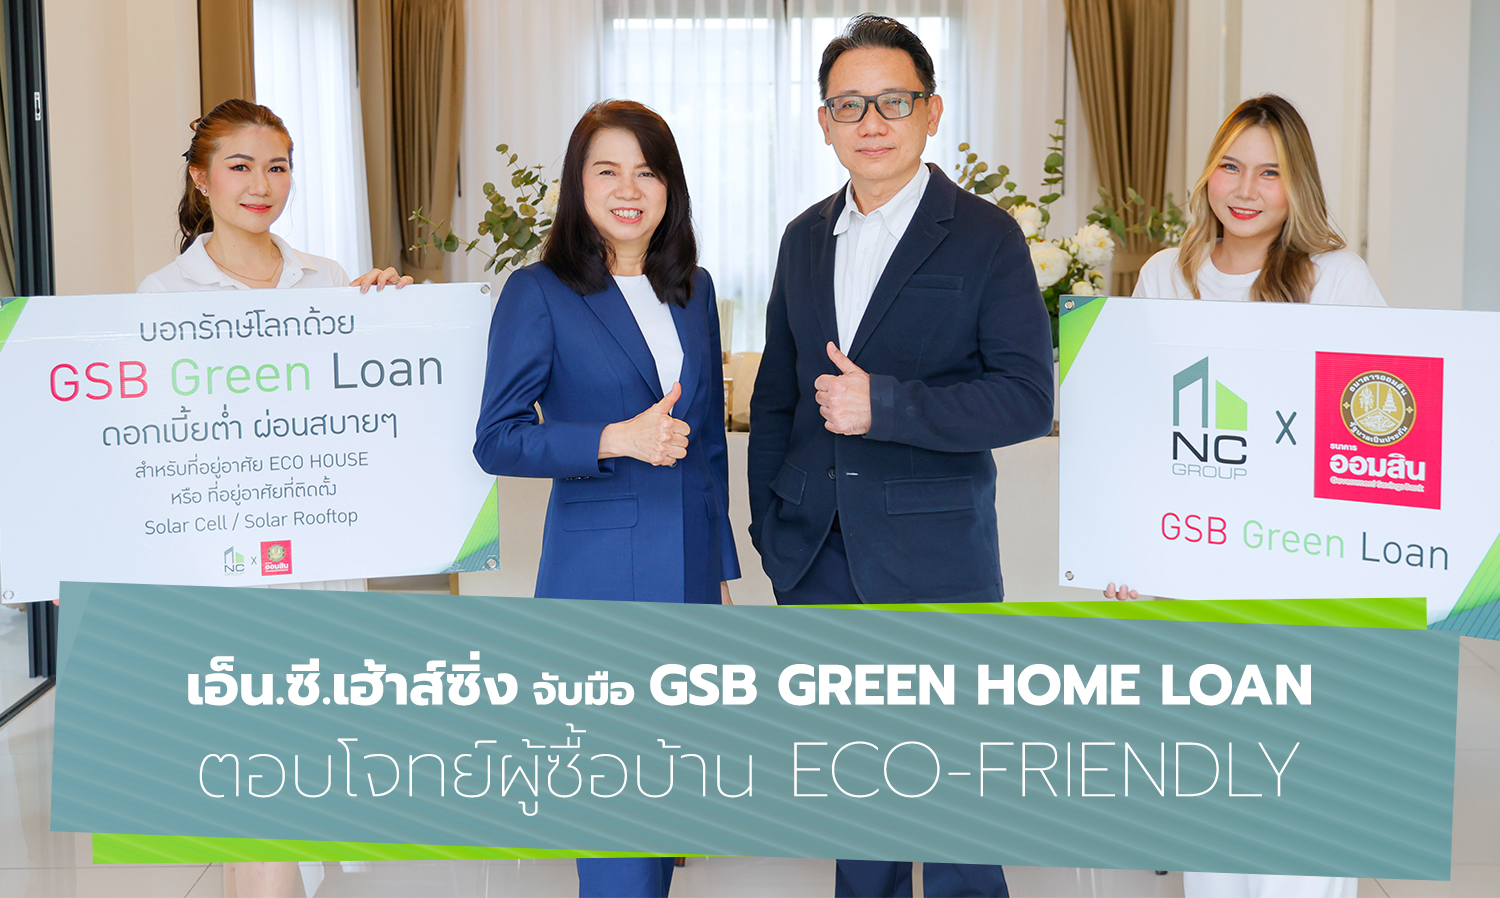 เอ็น-ซี-เฮ้าส์ซิ่ง-จับมือ-gsb-green-home-loan-ตอบ